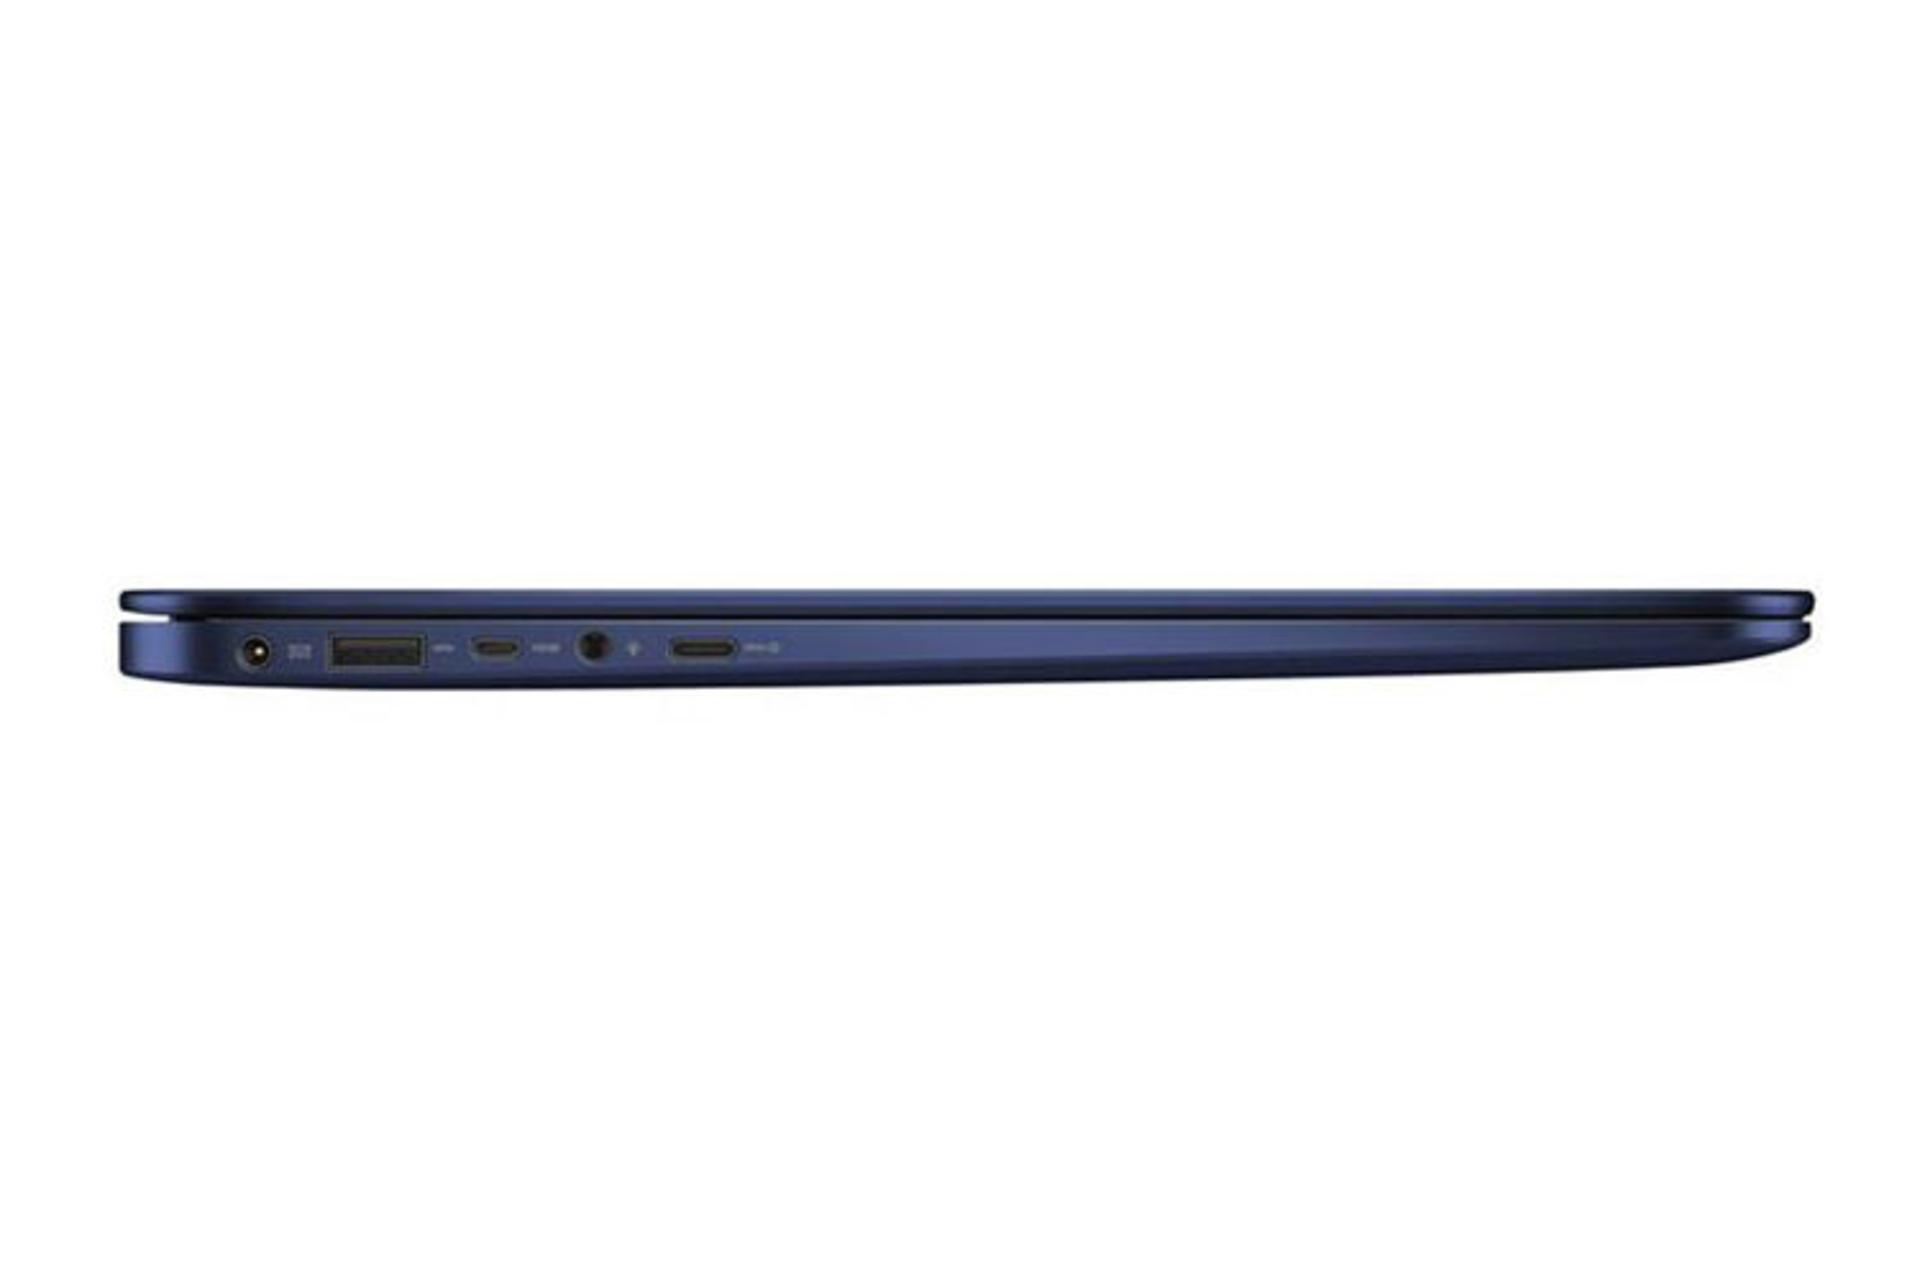 Asus ZenBook UX430UA